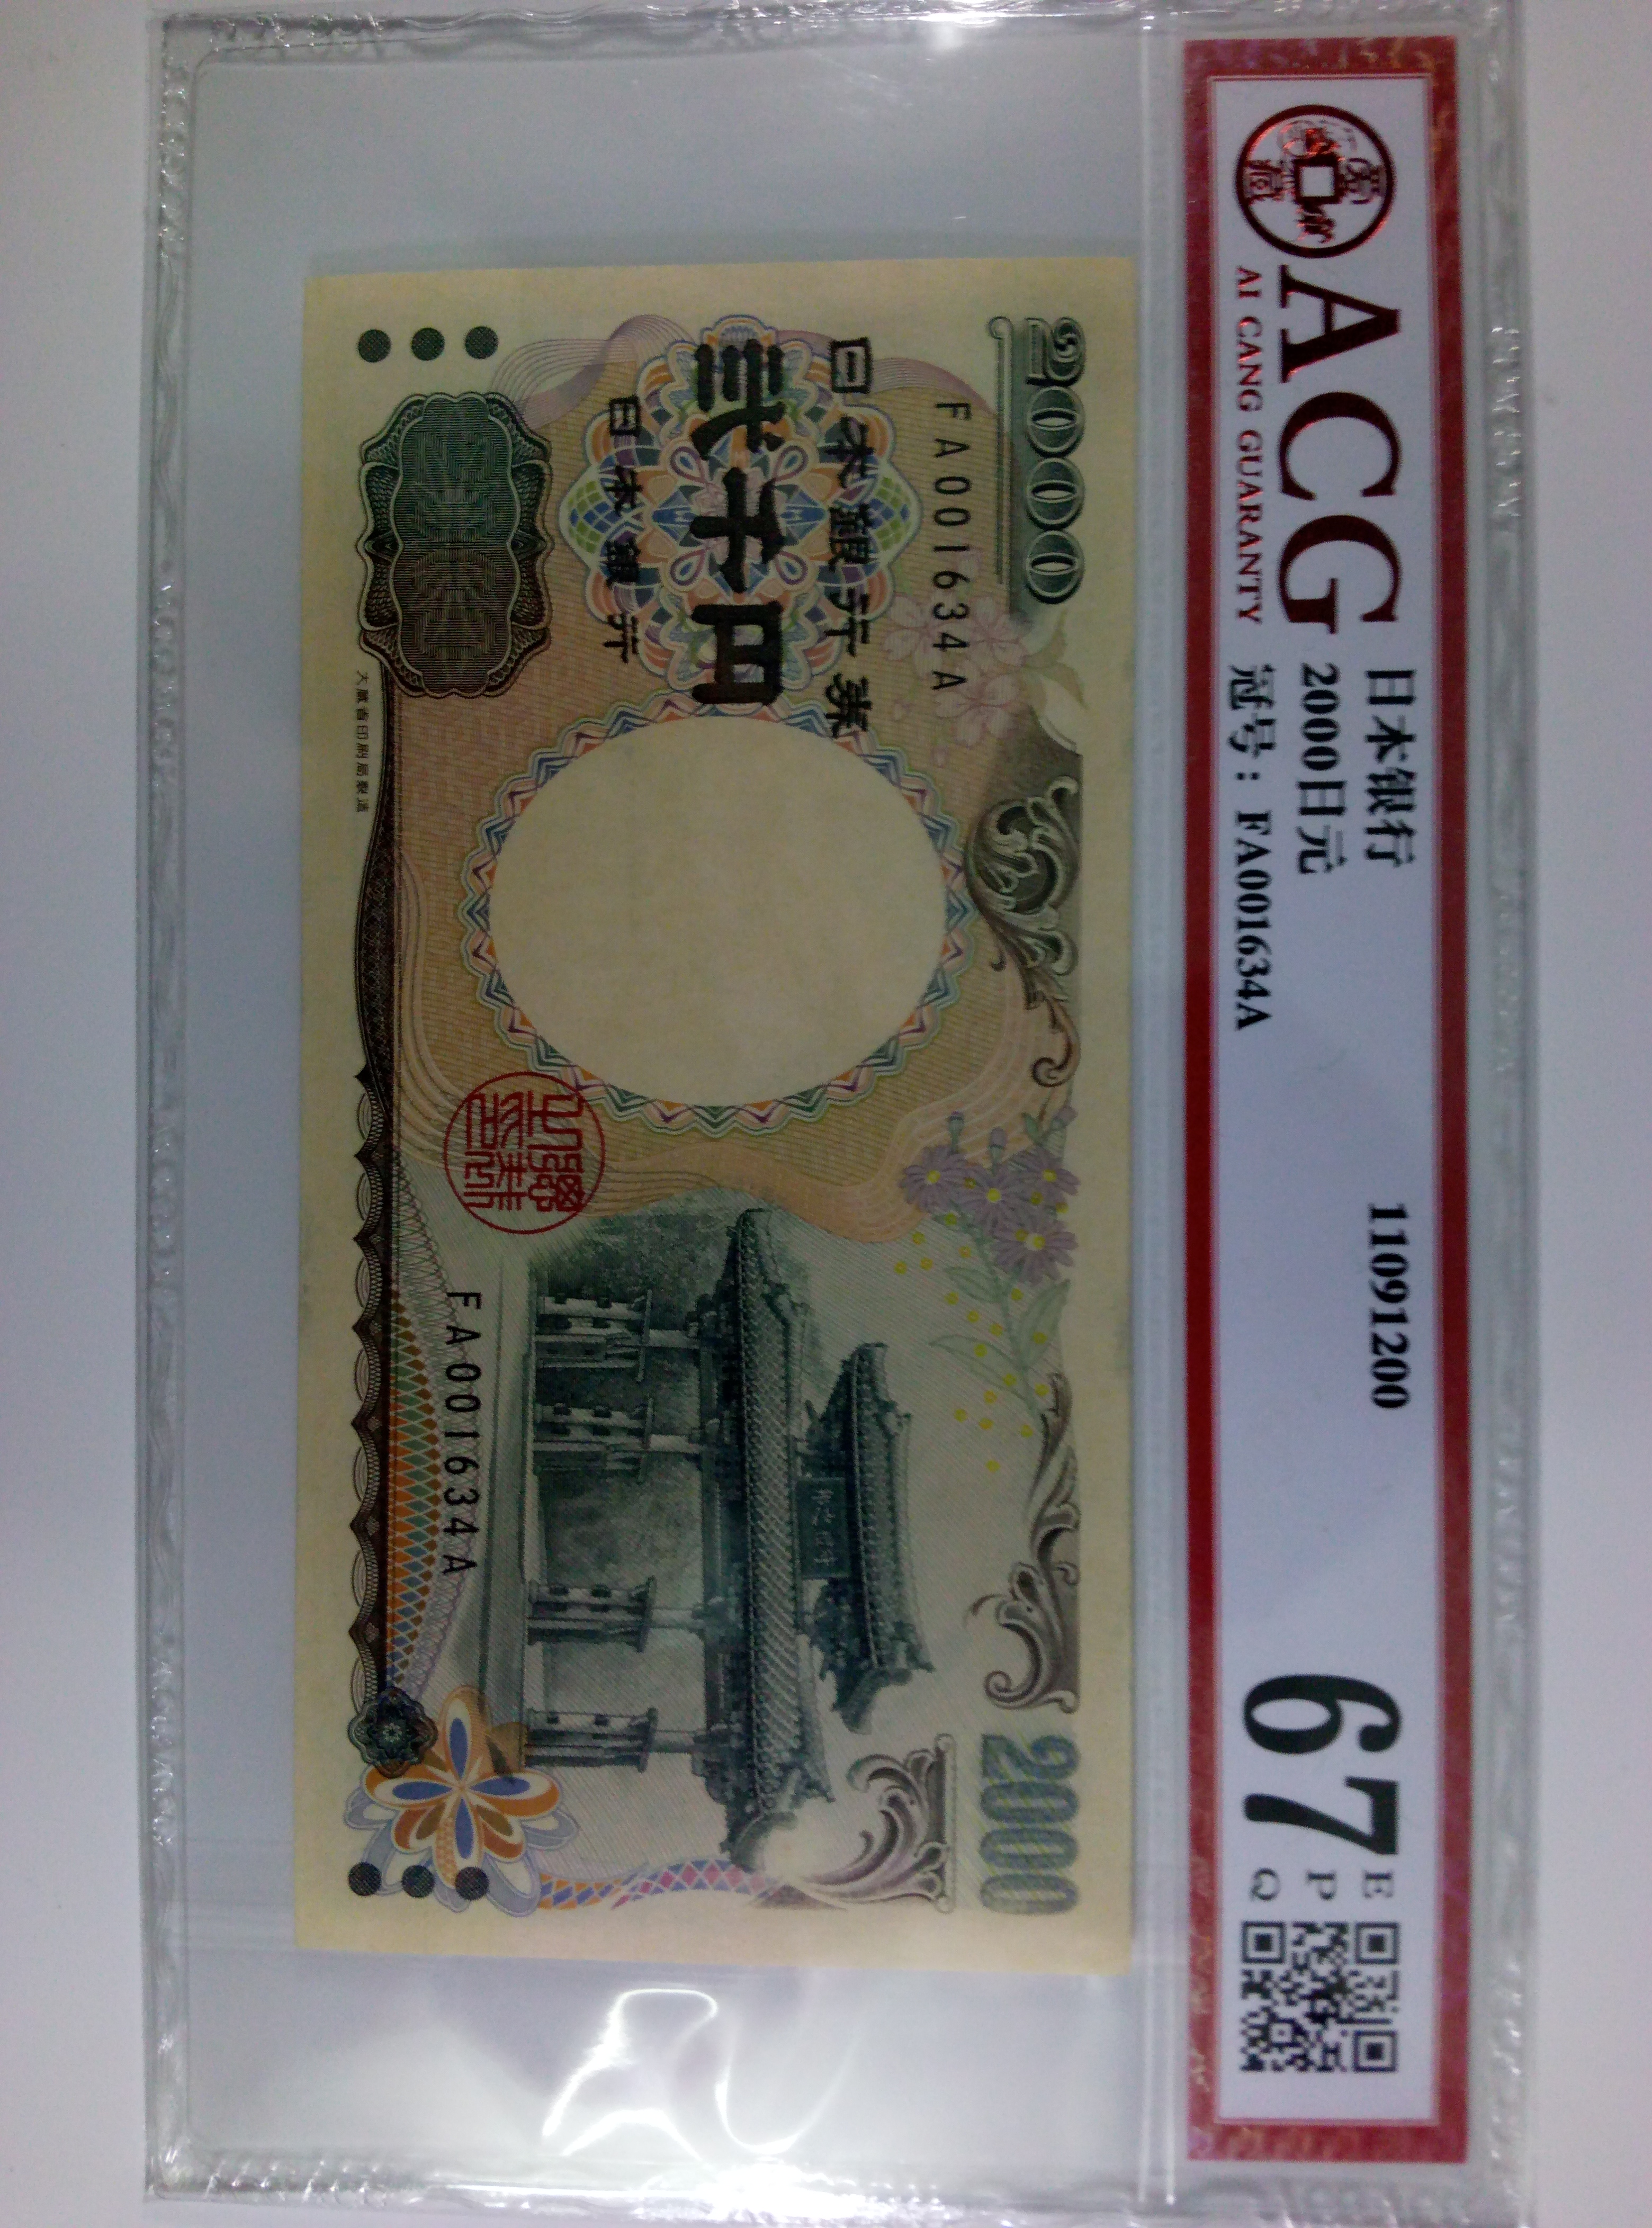 又是2000年千禧年纪念钞,是日本第一张面额2000的纸币,由于实际很少在